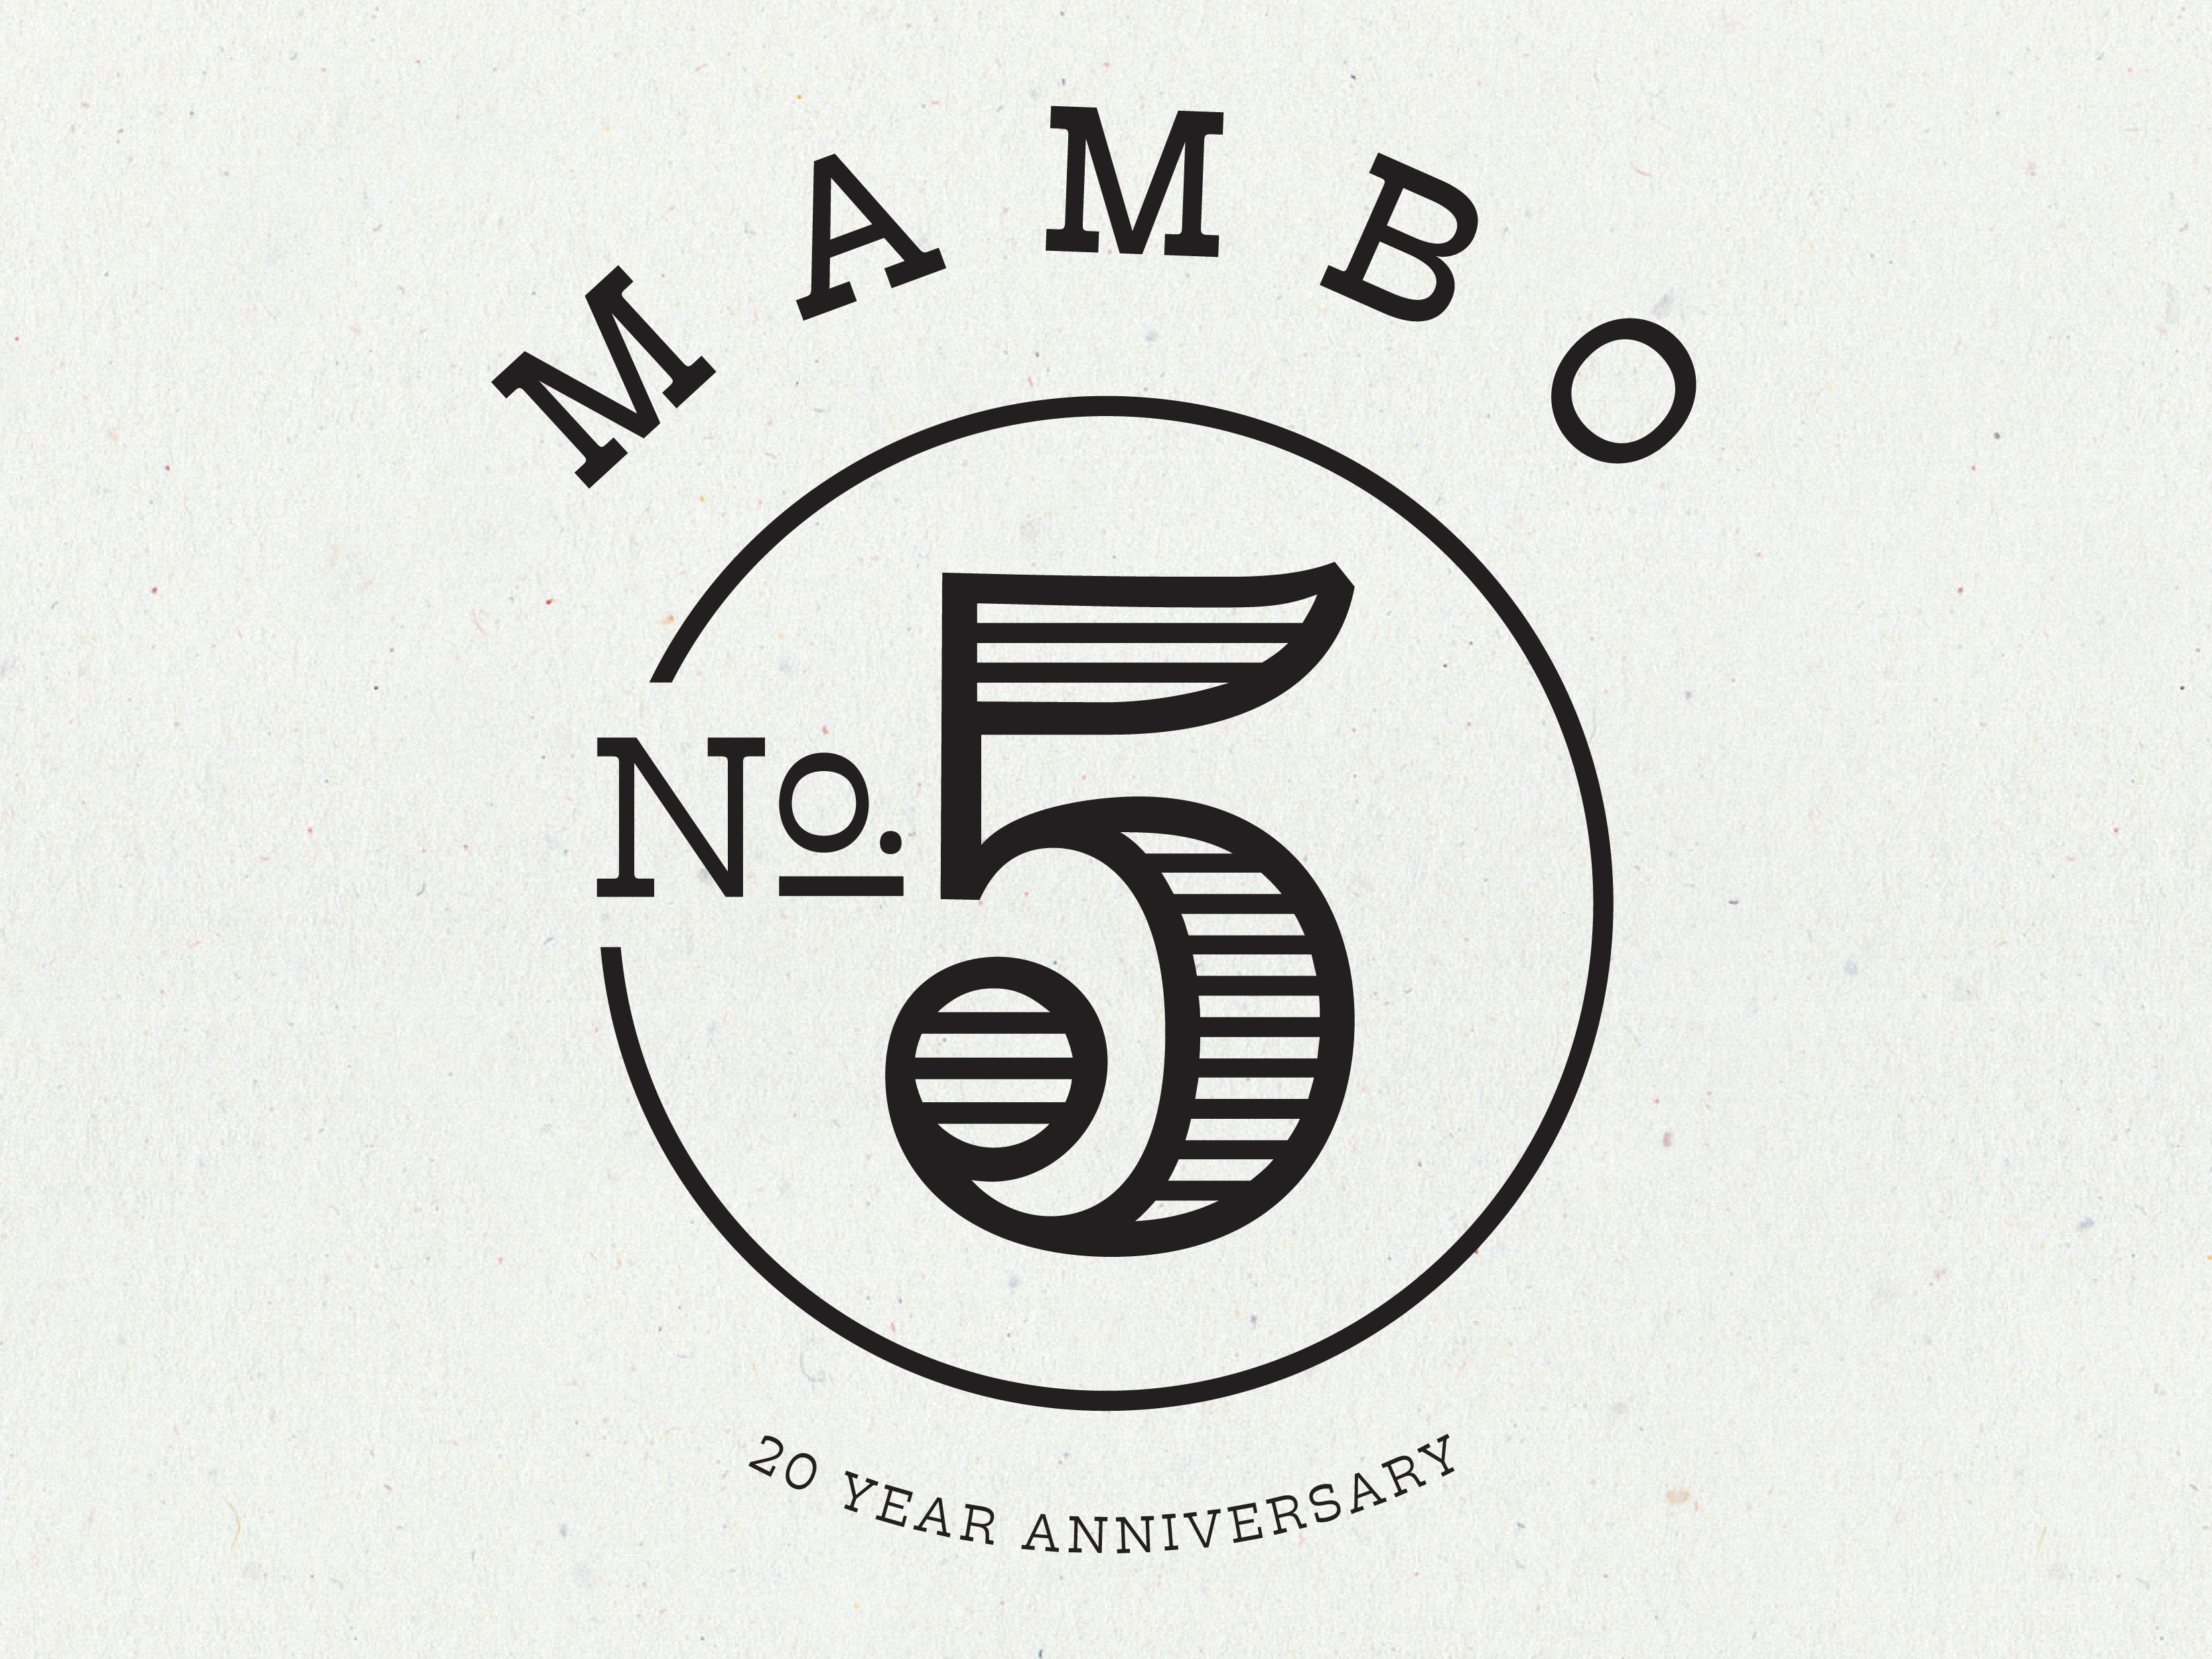 mambo number 5